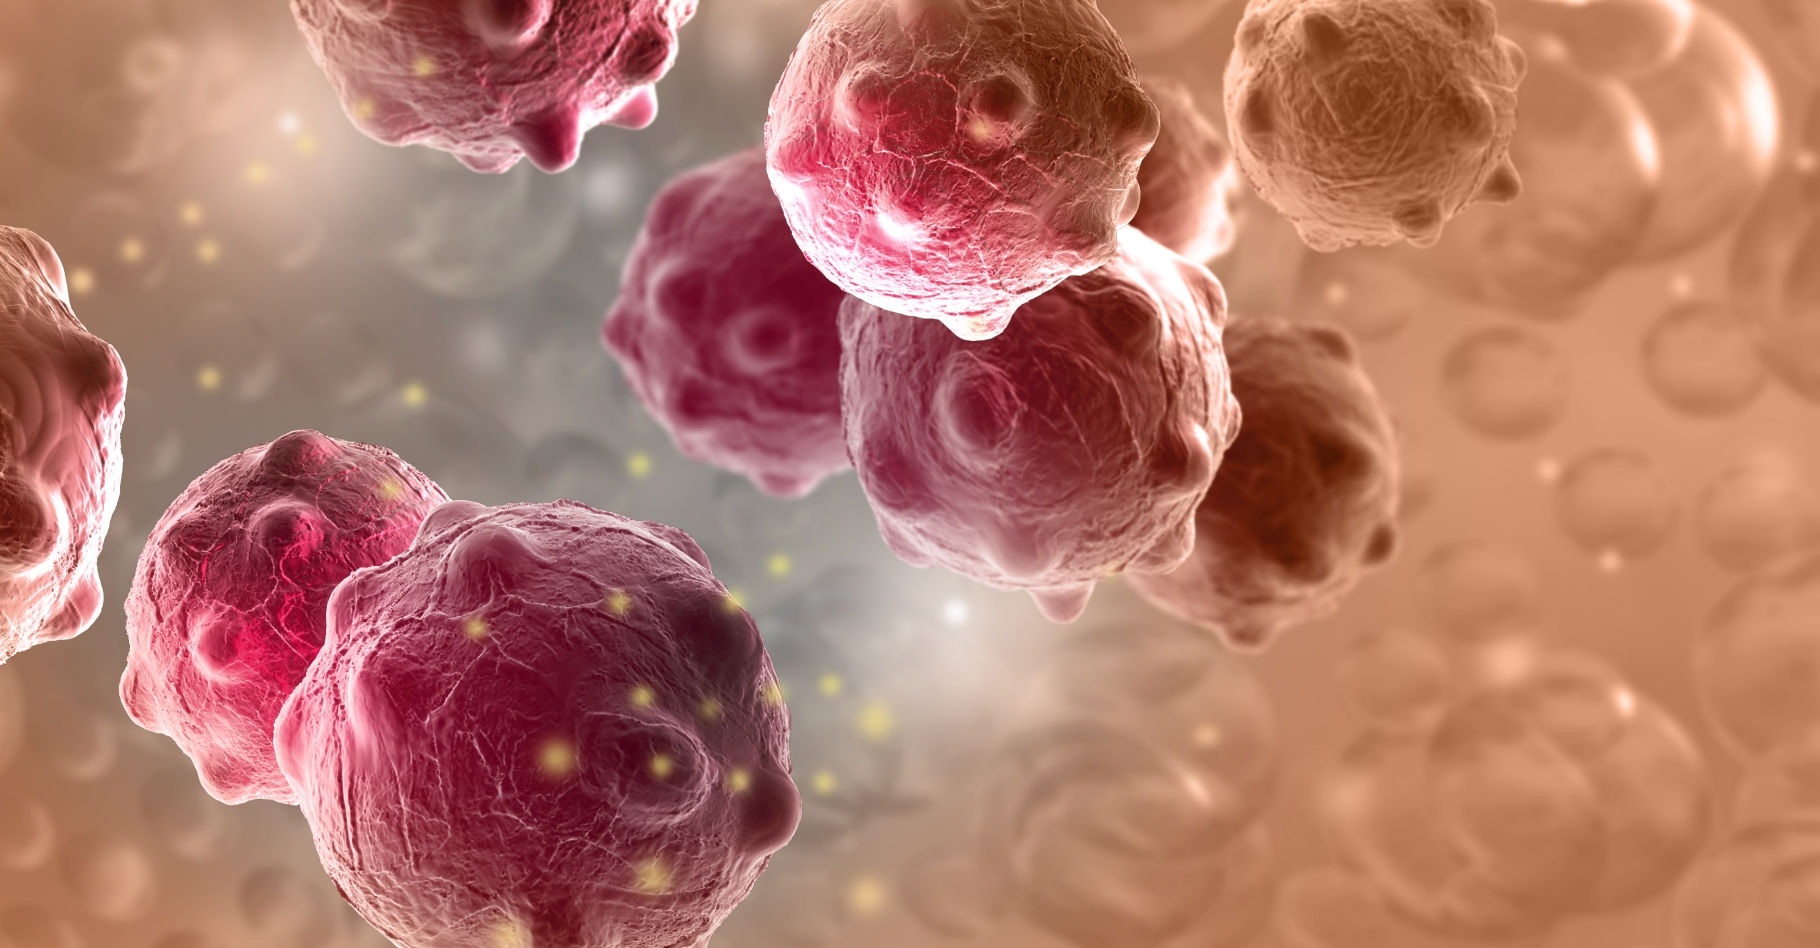 La protéine développée par les chercheurs, OMO-103, inhiberait le gène MYC impliqué dans de nombreuses voies de signalisation cellulaire qui favorisent différents cancers. © Johan Vitanovski, Shutterstock